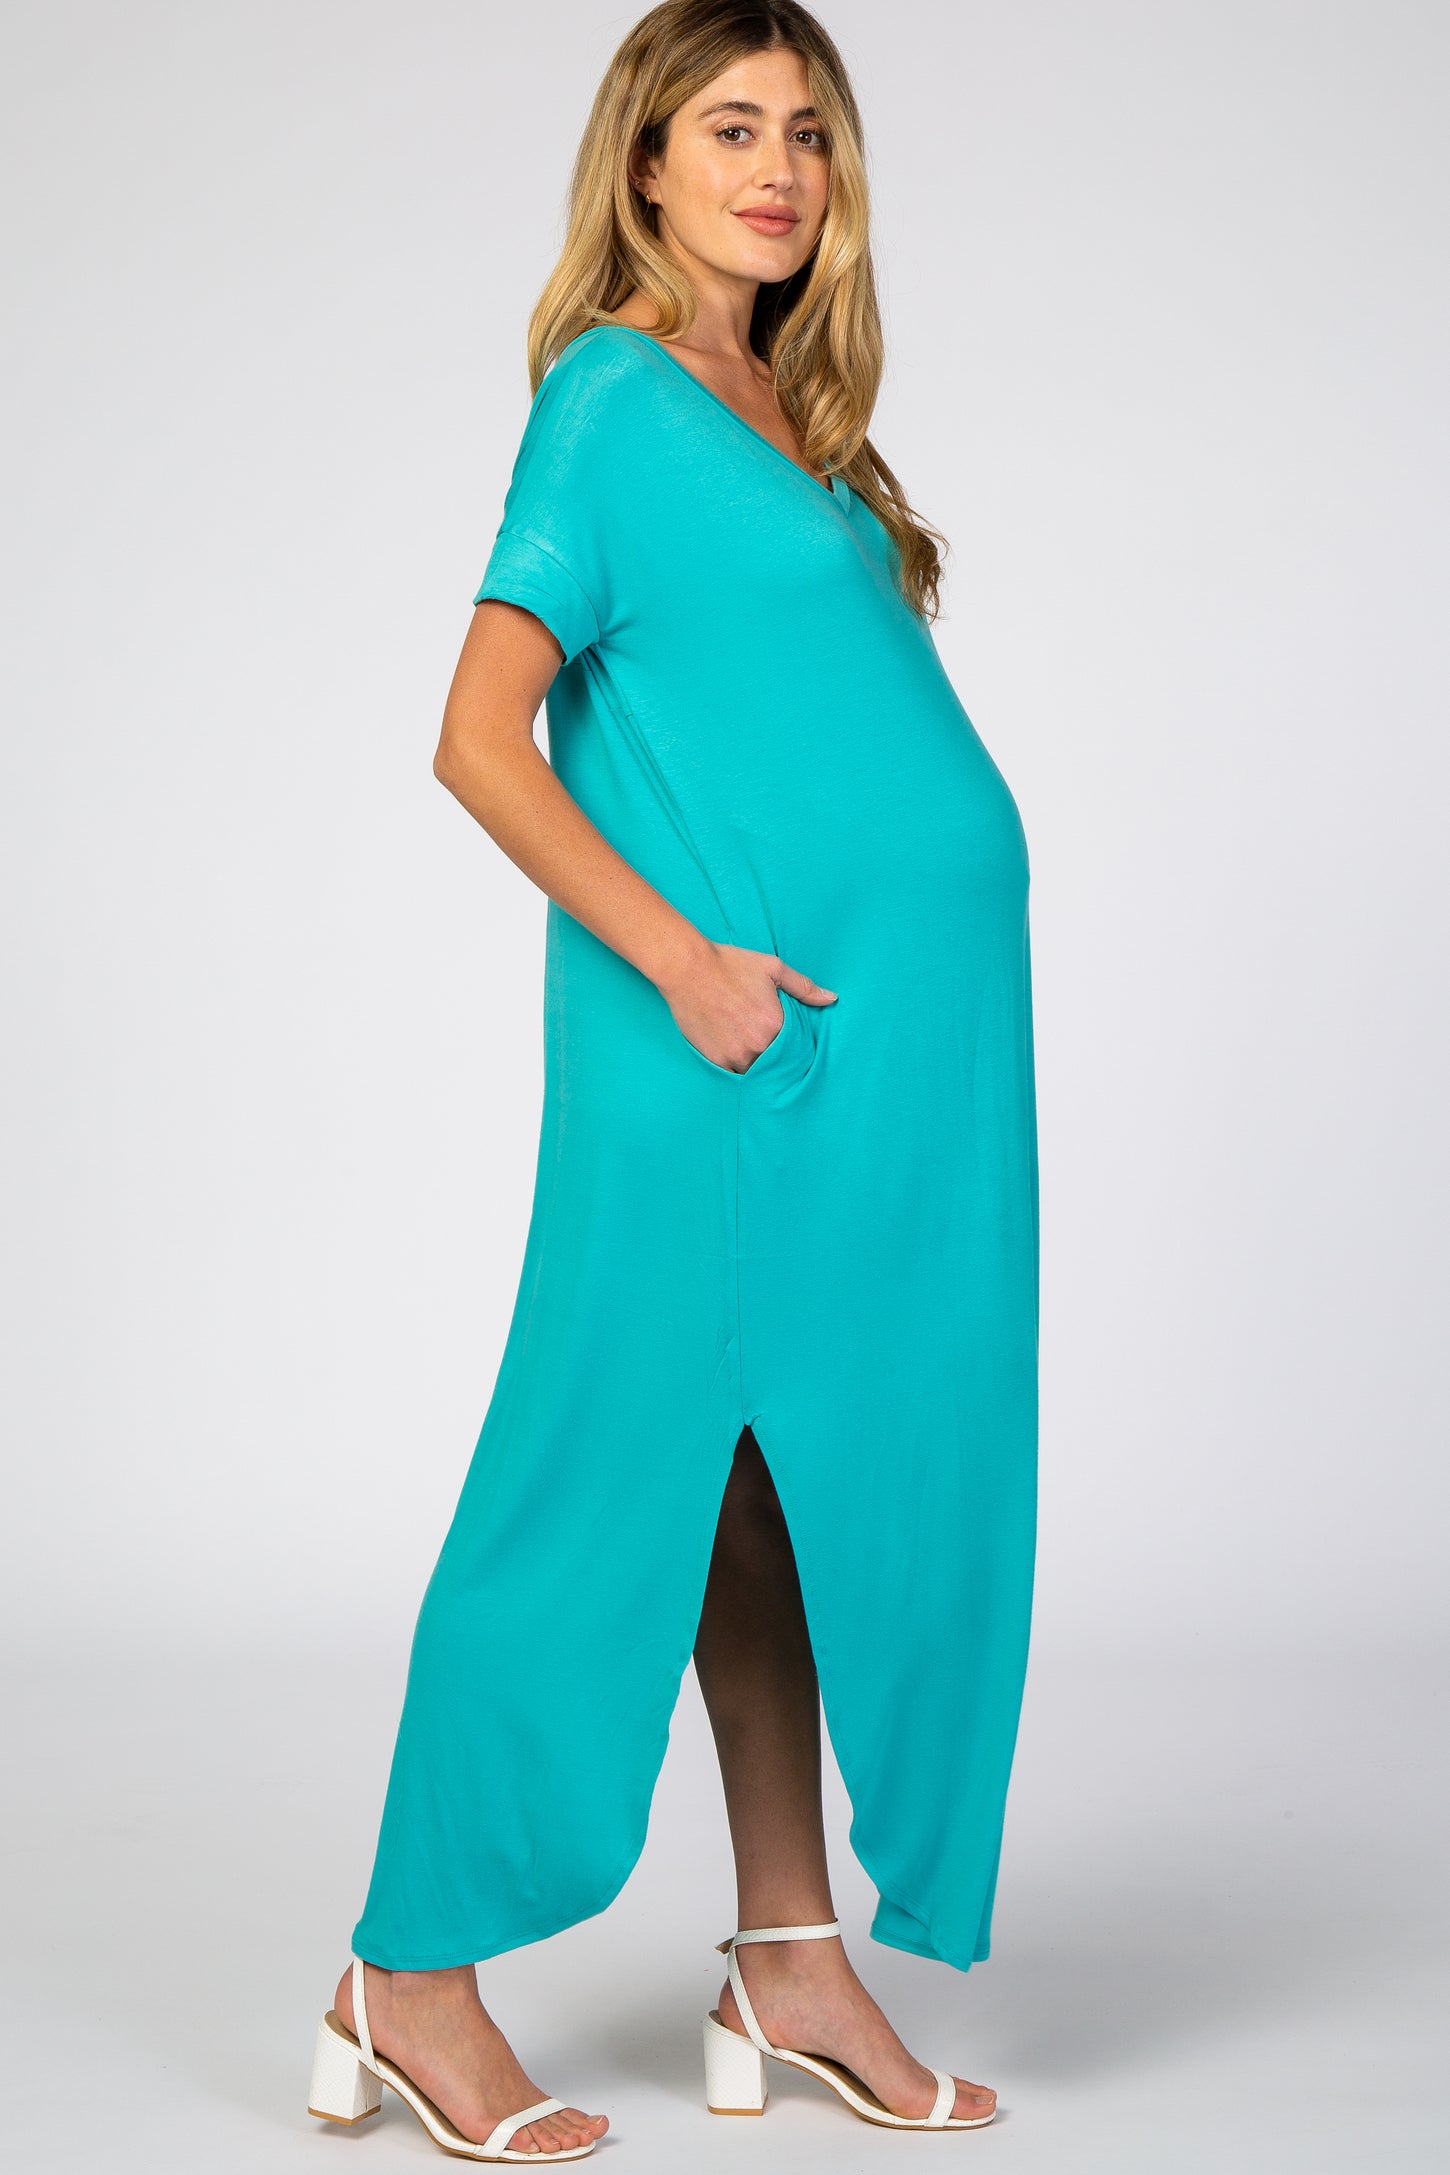 Aqua Side Slit Maternity Maxi Dress